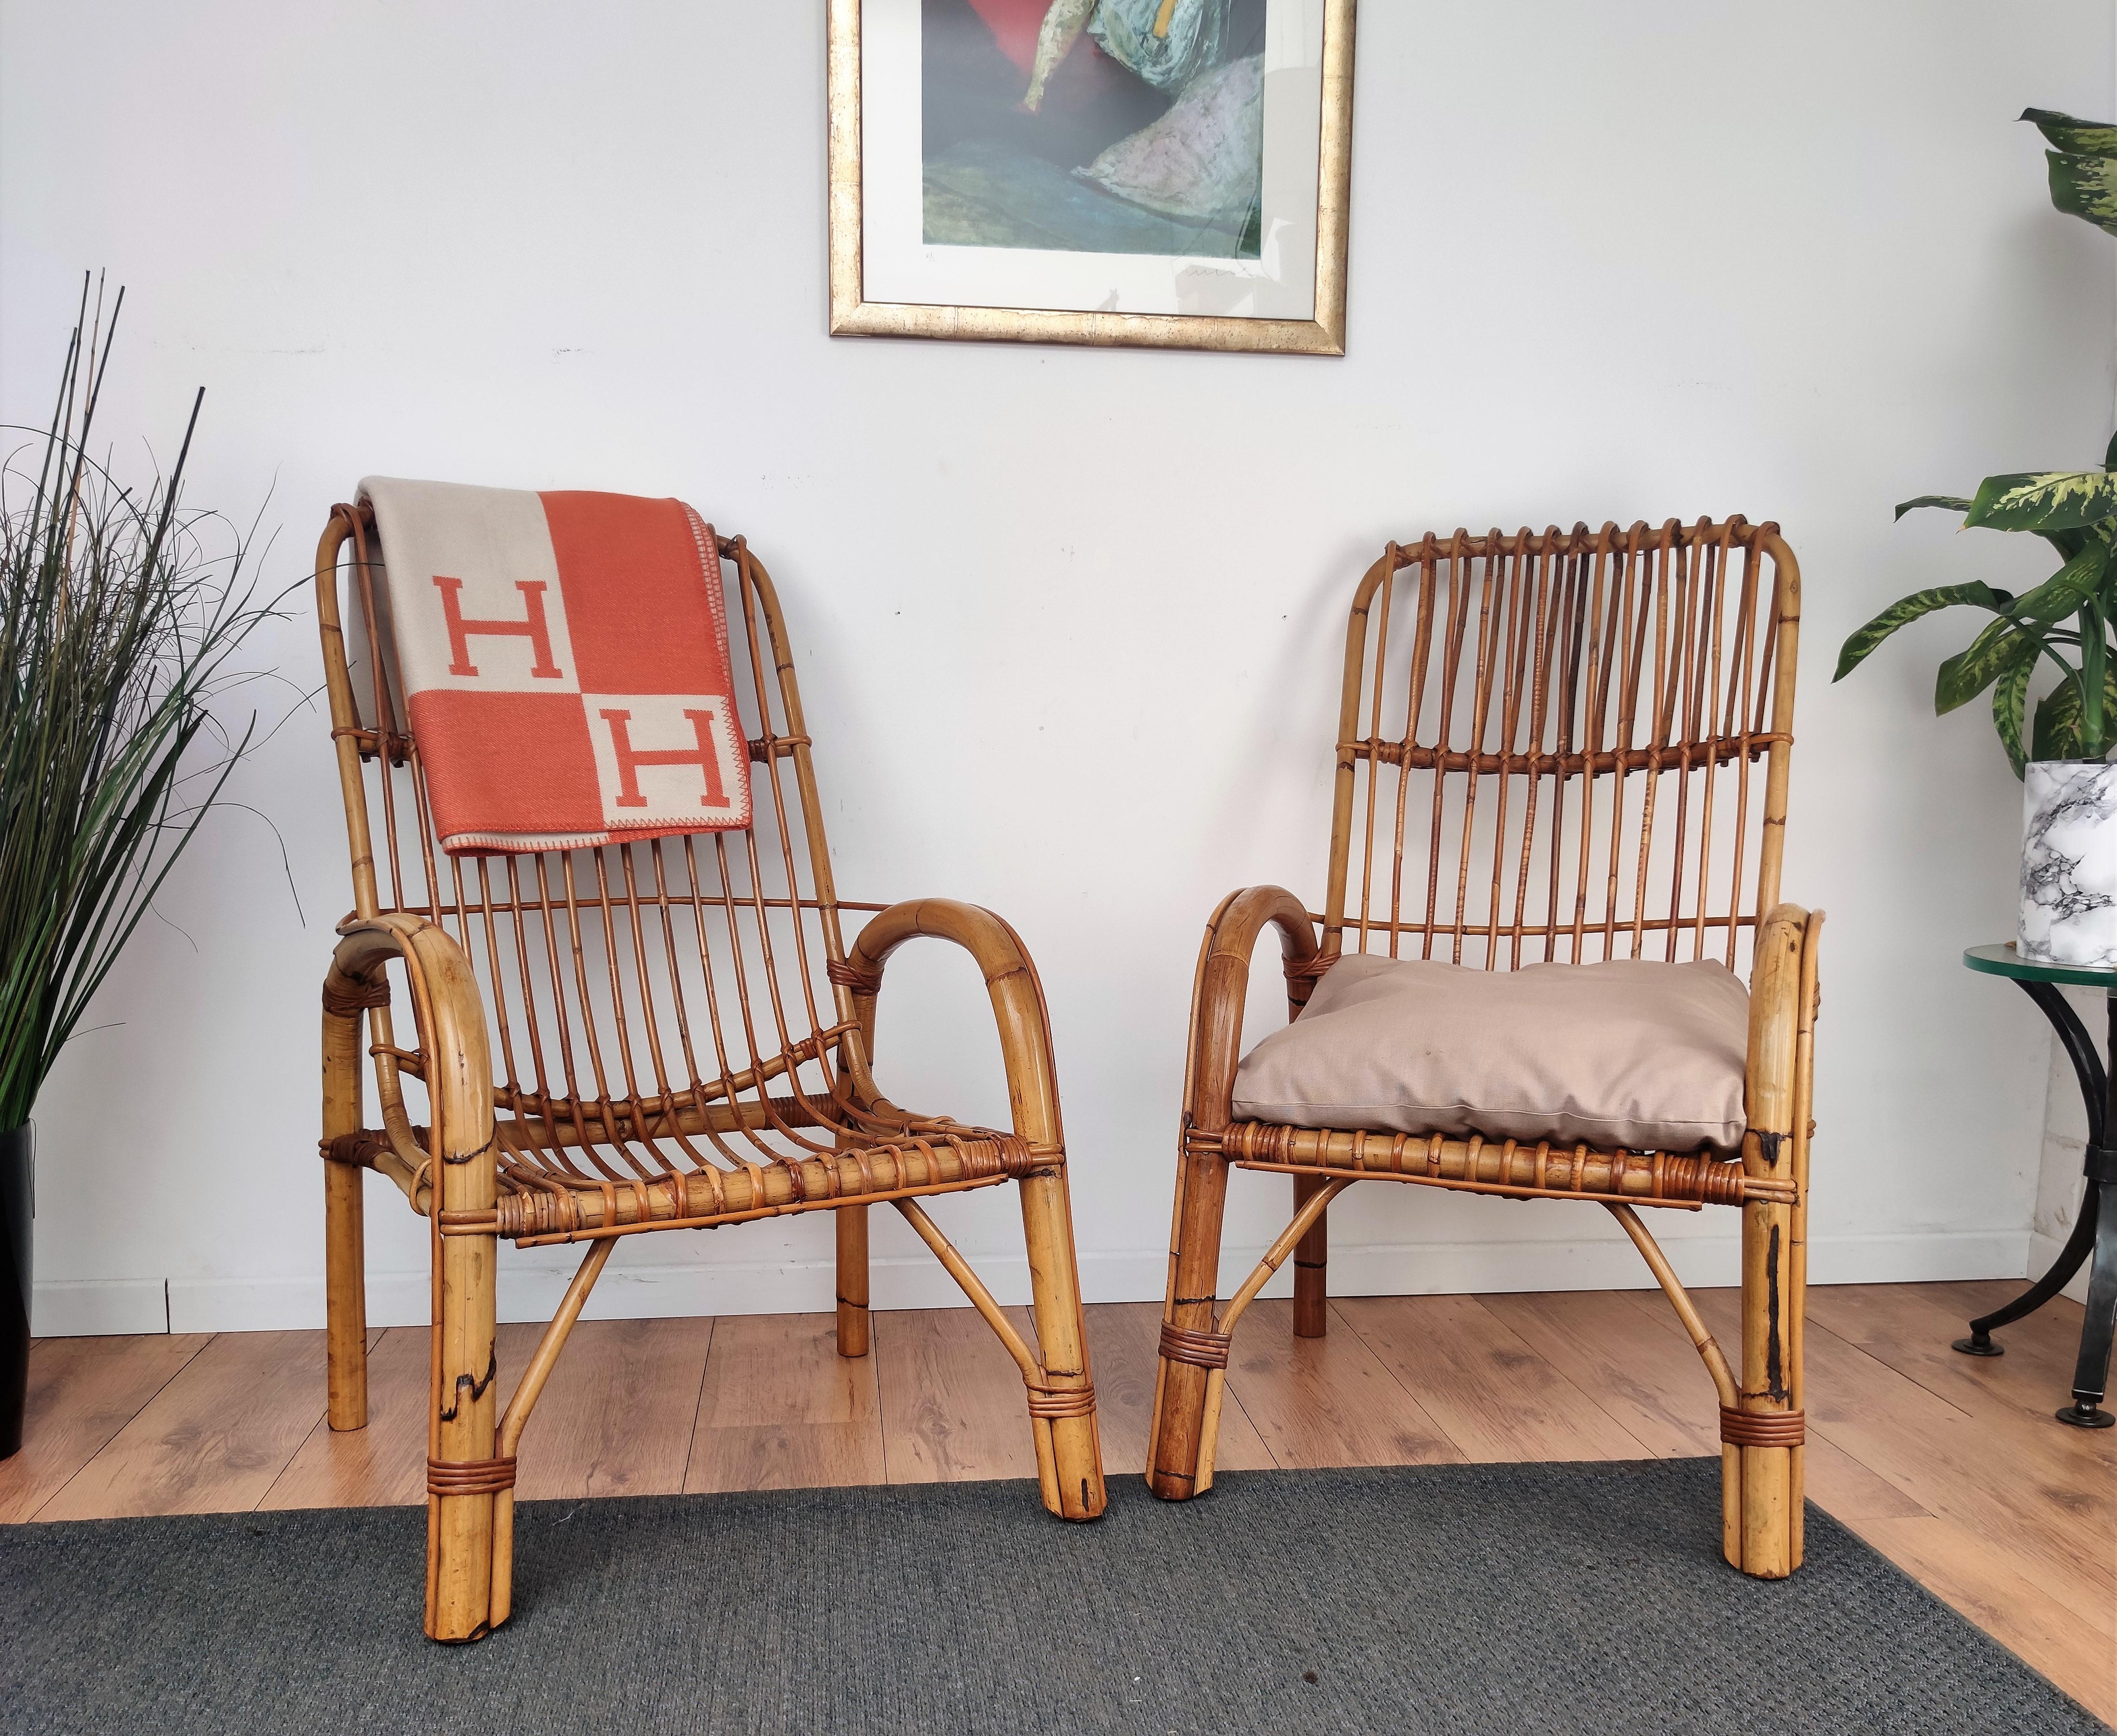 Magnifique paire de fauteuils italiens des années 1960 en rotin osier bambou avec un grand design et un haut dossier. Ces charmantes chaises de salon sont dans le style typique de Franco Albini et Adrien Audoux où la beauté organique des matériaux